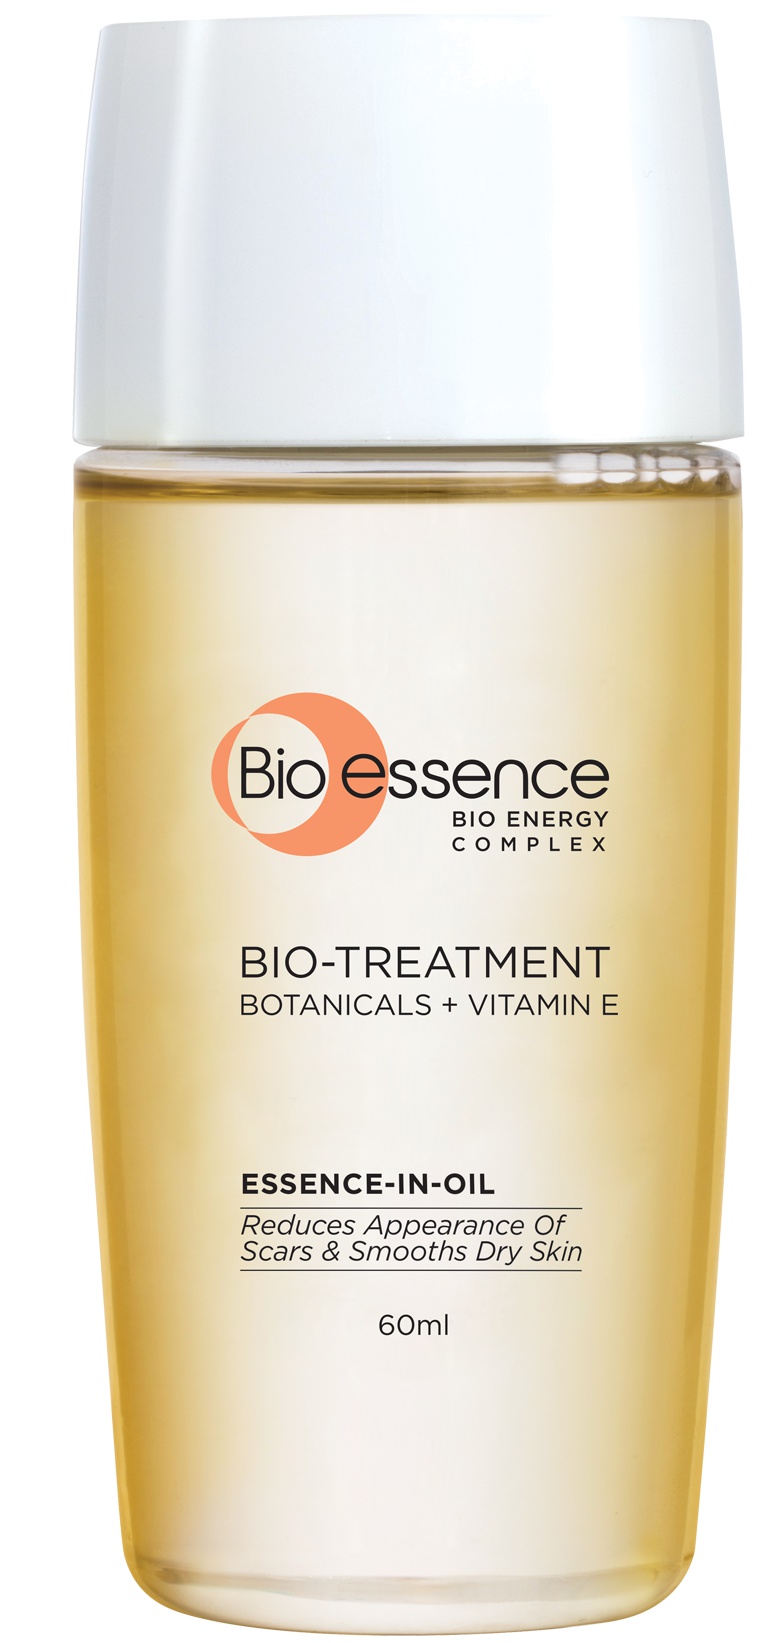 Bio essence Bio-treatment Essence-in-oil